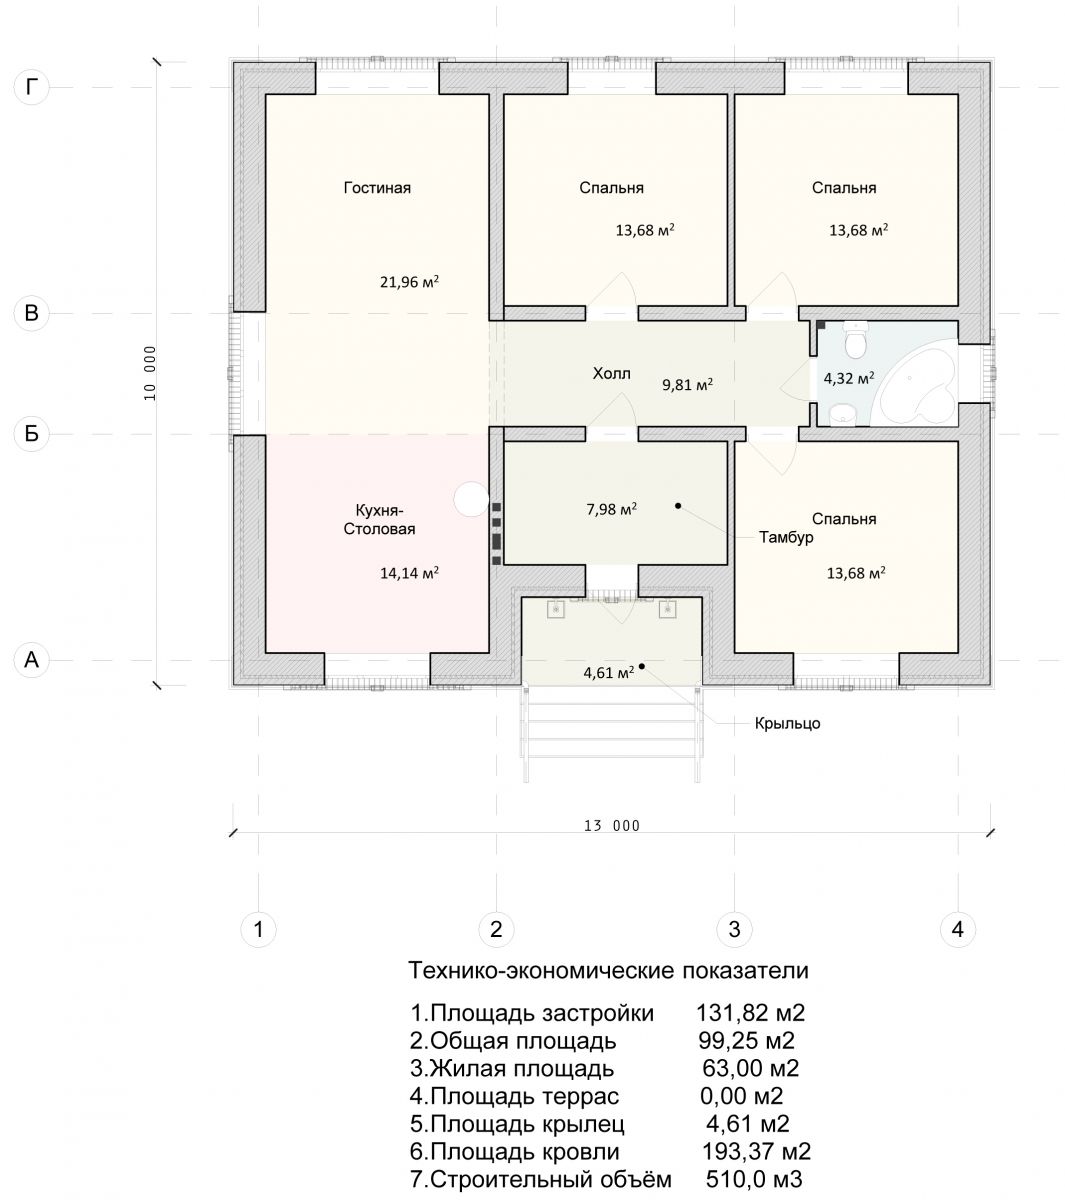 Проекты одноэтажных домов: строительство конструкции 8х8, 9х9, 10х10, 12х12 с отличной планировкой